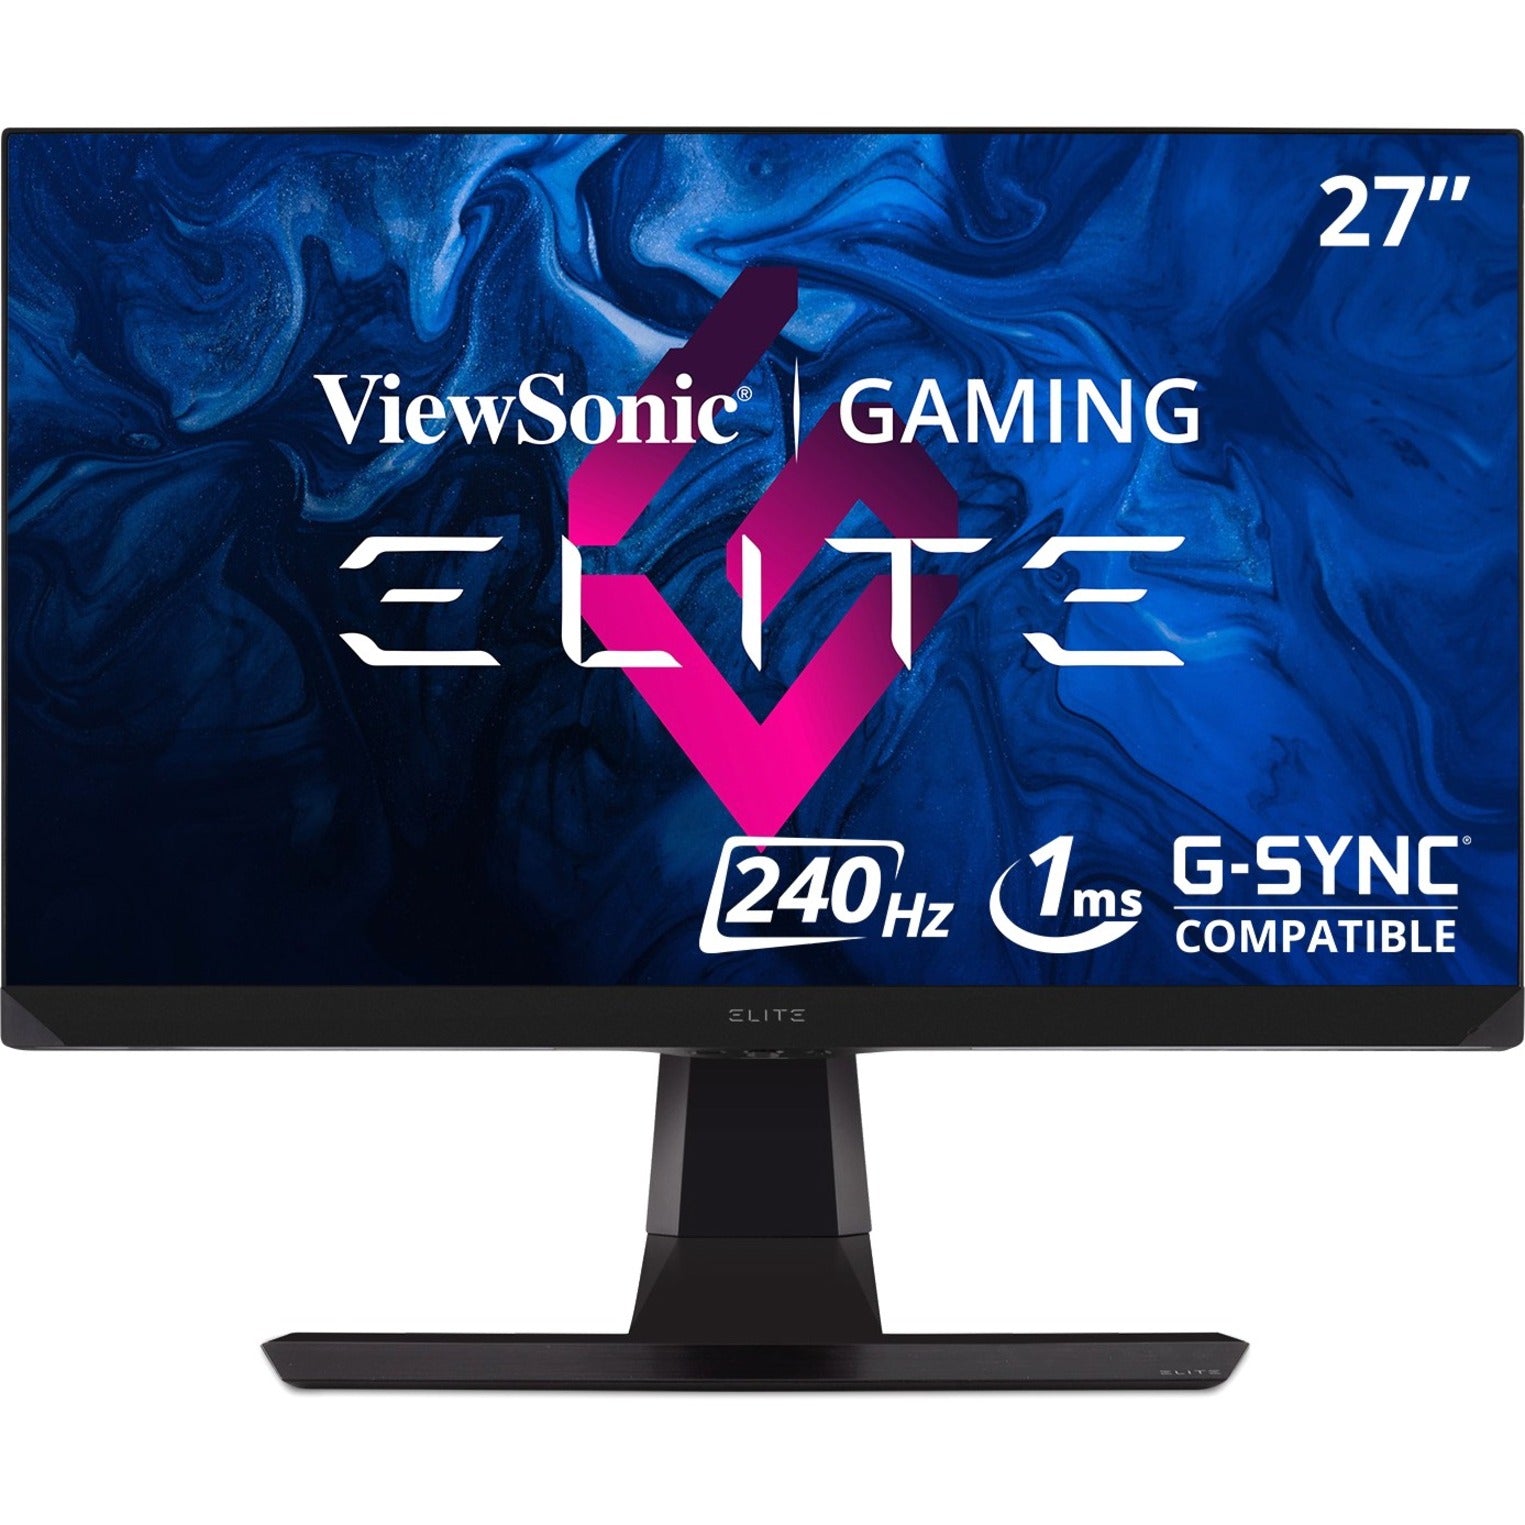 ViewSonic XG270 Elite 27 Gaming Monitor, 165Hz G-Sync QHD, IPS Panel, 1ms Response Time, 99% sRGB, 400 Nit Brightness